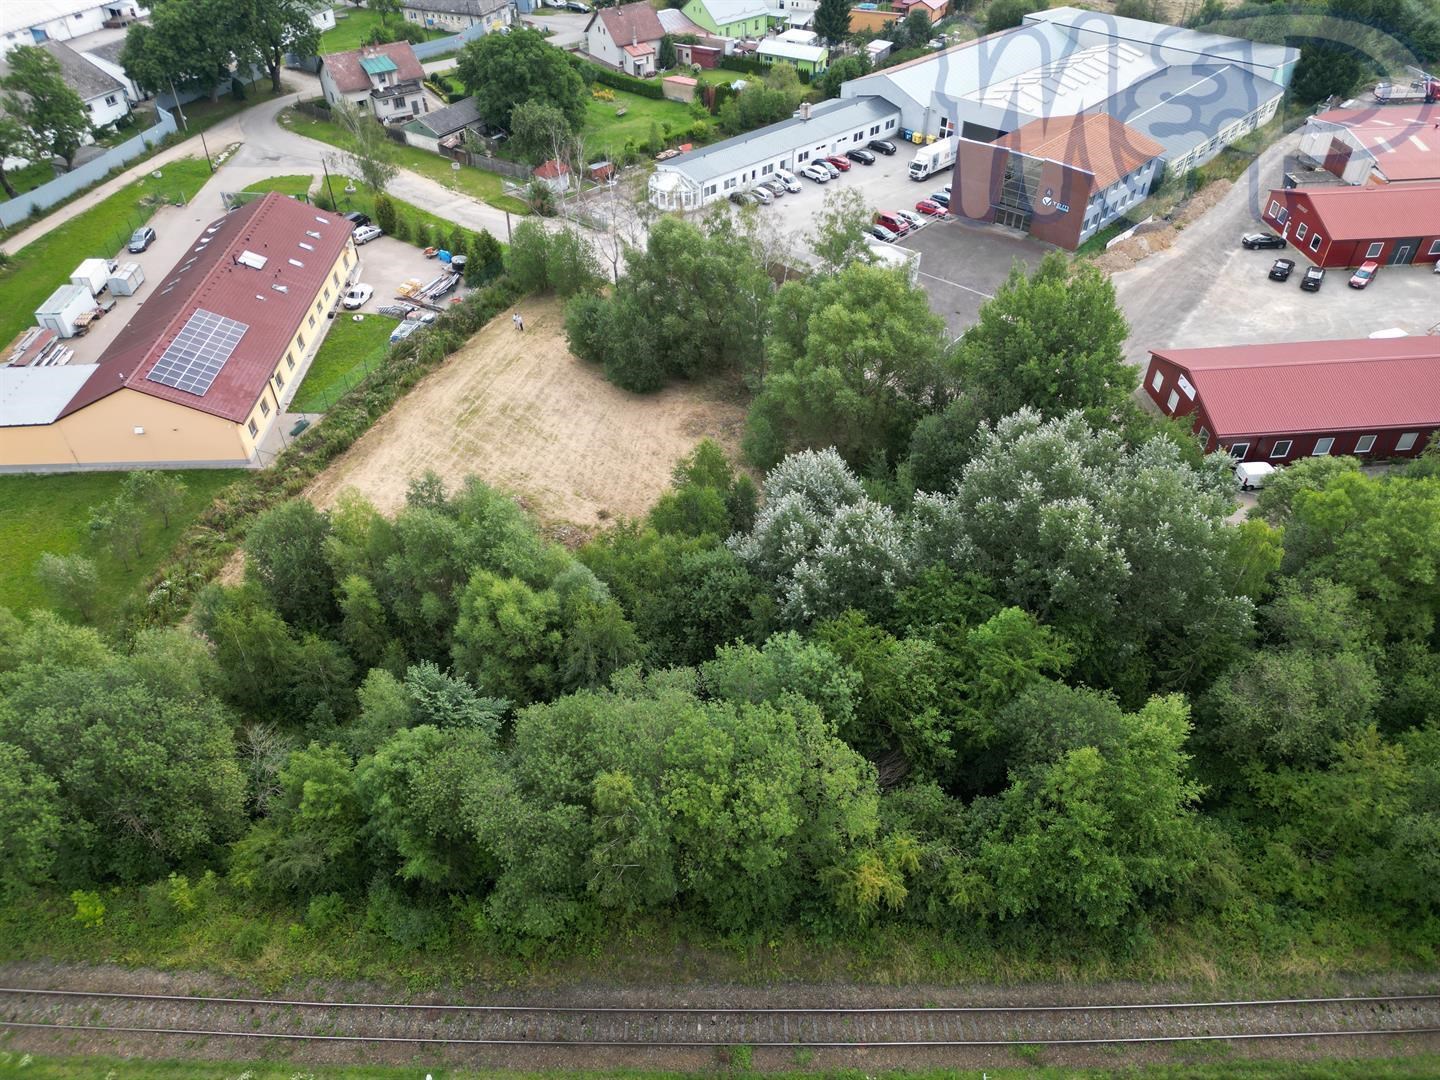 Komerční stavební pozemek v Jihlavě (POHLED Z DRONU)